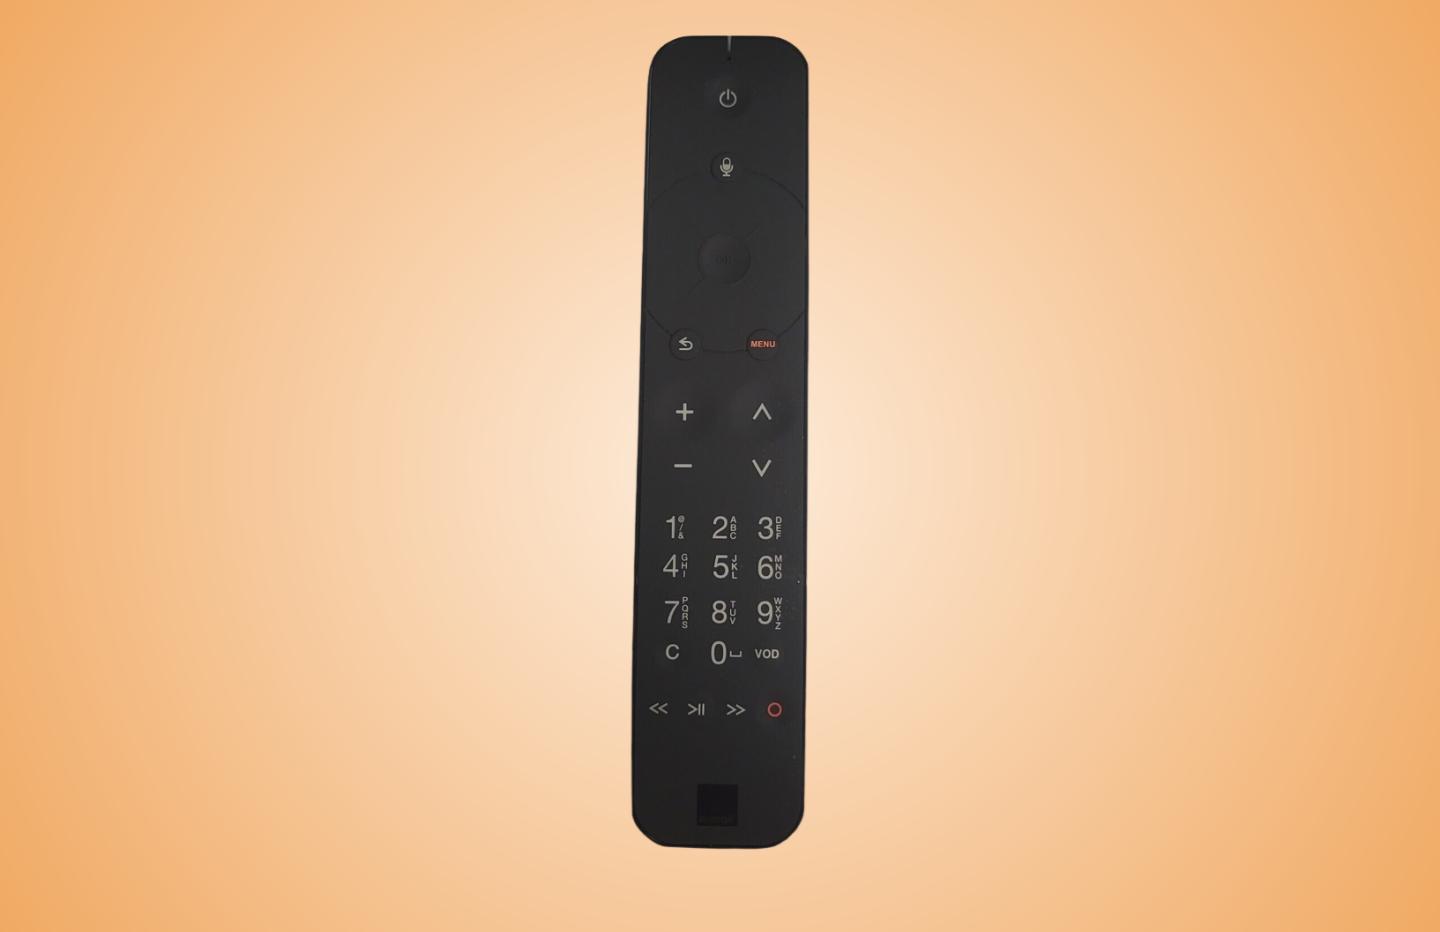 telecommande orange pour livebox 5 - pour décodeur Tv UHD